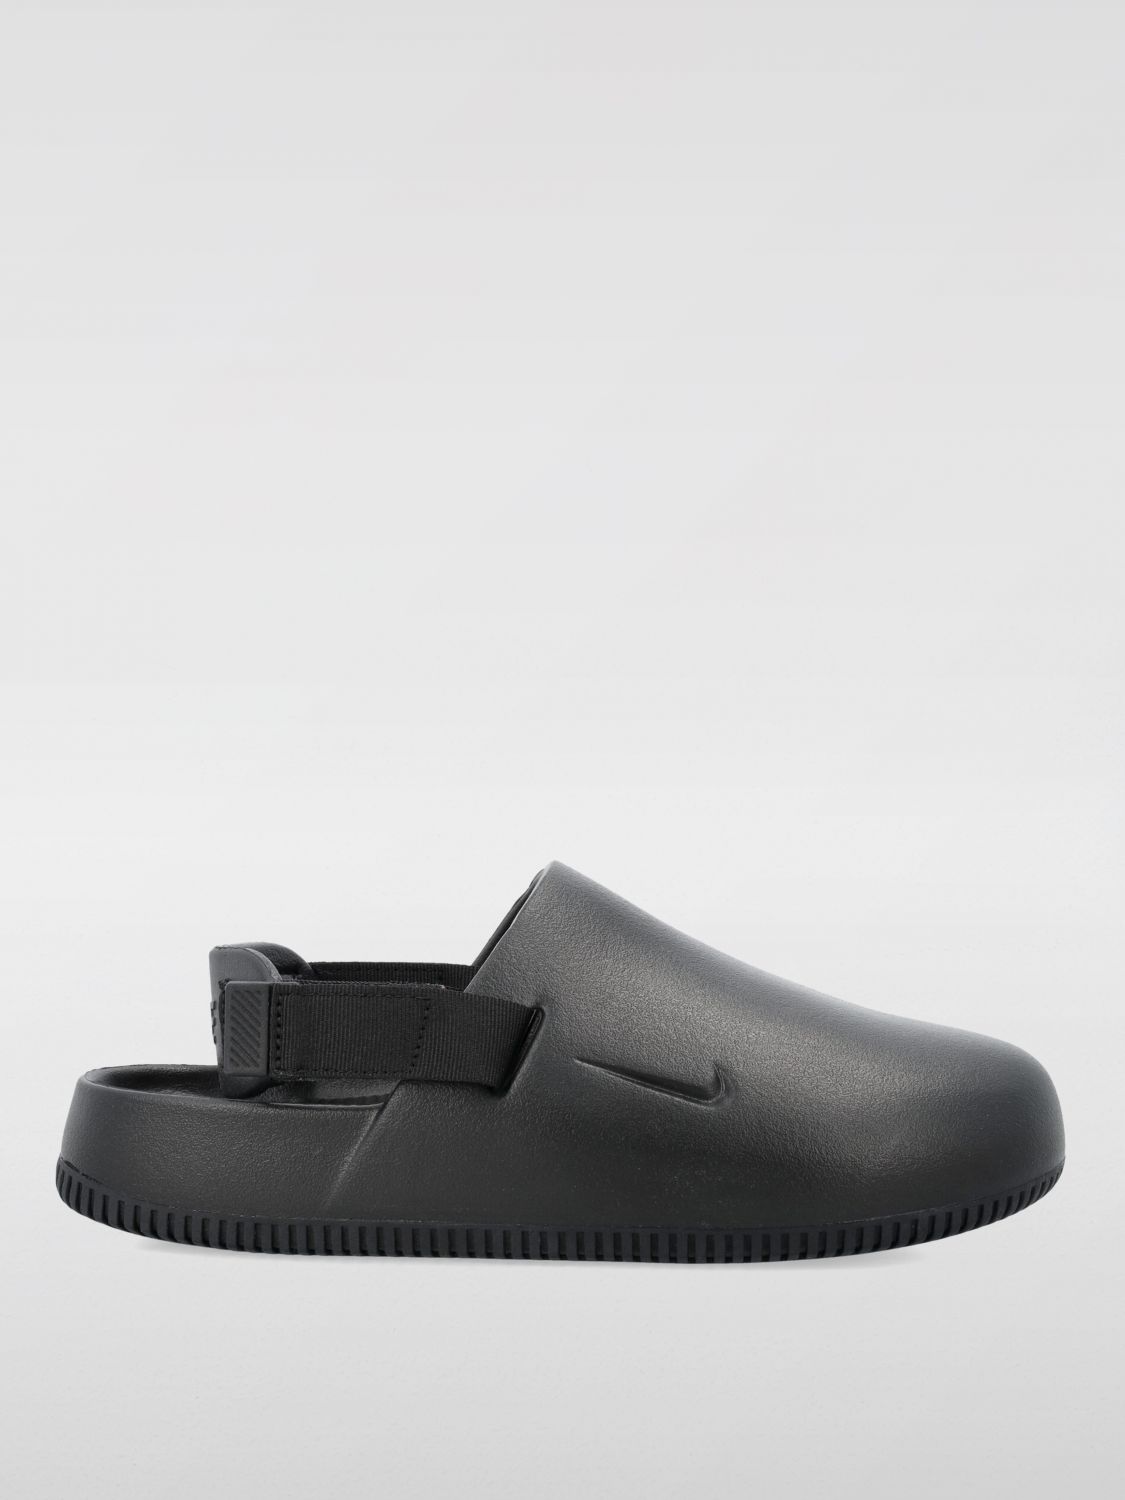 Nike Shoes NIKE Men color Black